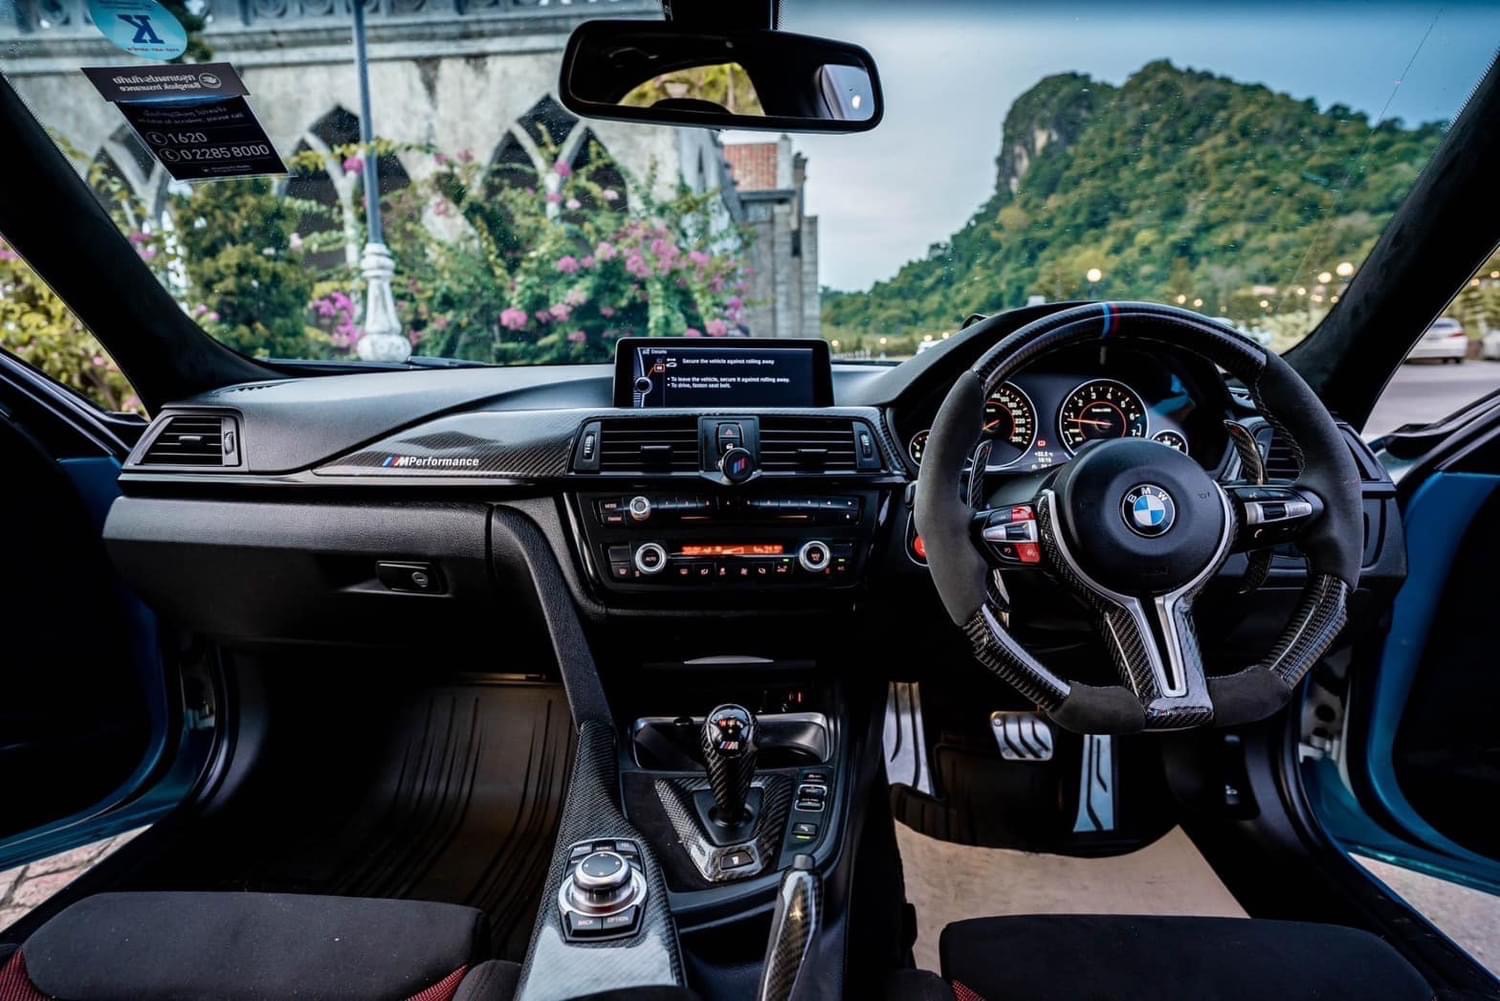 เจ้าของขายเอง 2014 BMW 320i LCI M3 F80 2.0 Luxury ของแต่งแท้ เกือบล้าน สีข้างในสีขาว